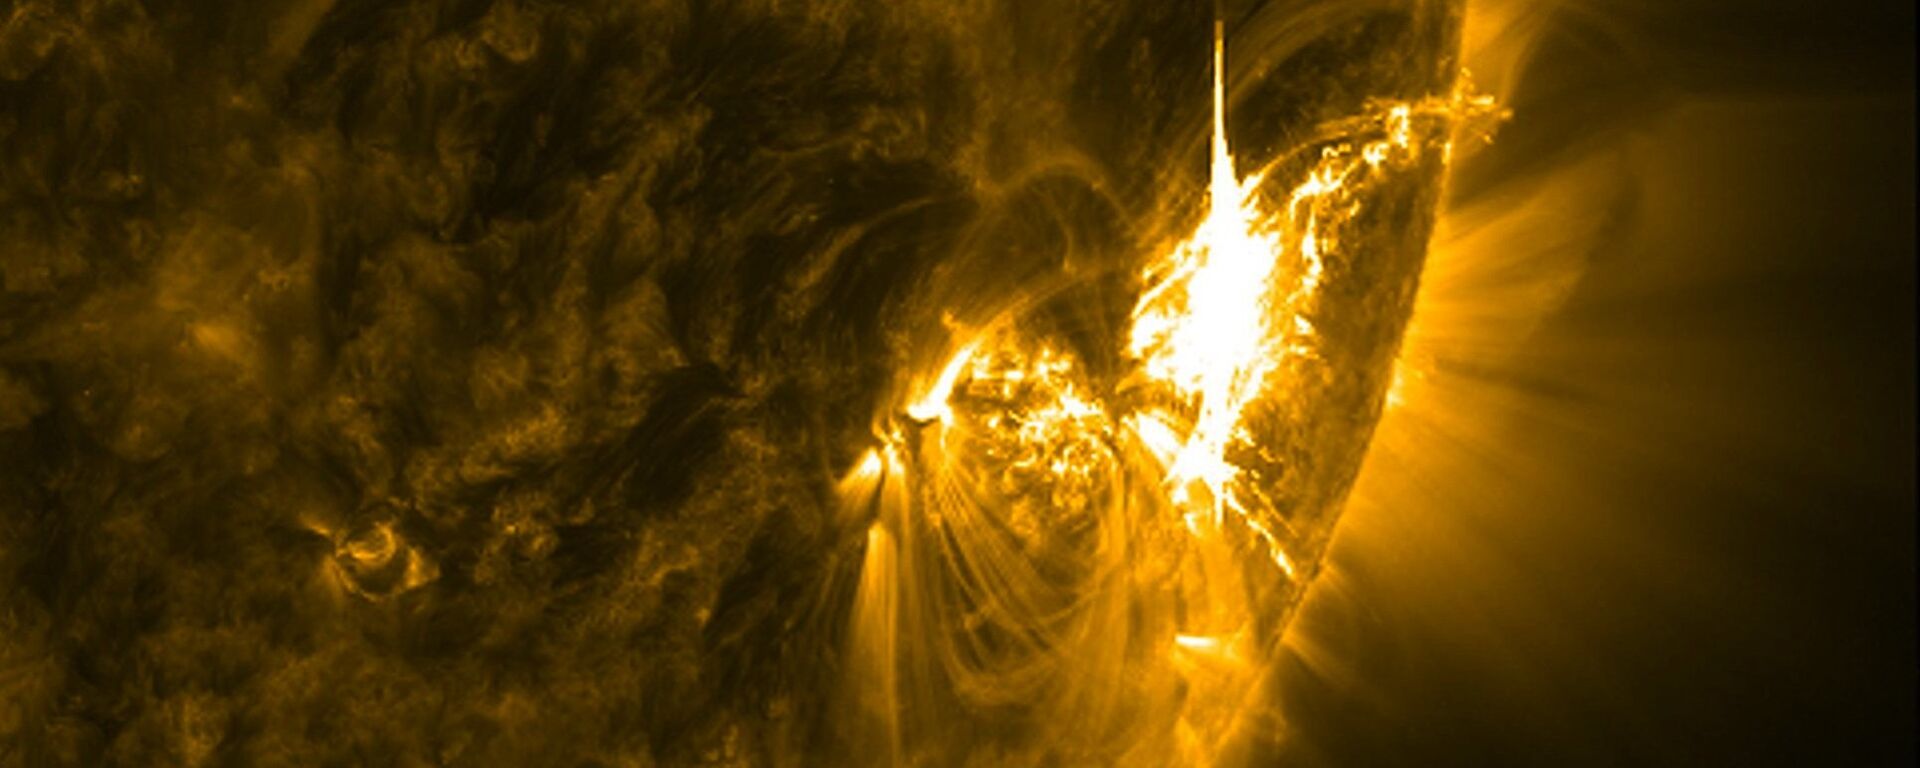 გეომაგნიტური ქარიშხალი მზეზე - Sputnik საქართველო, 1920, 29.10.2021